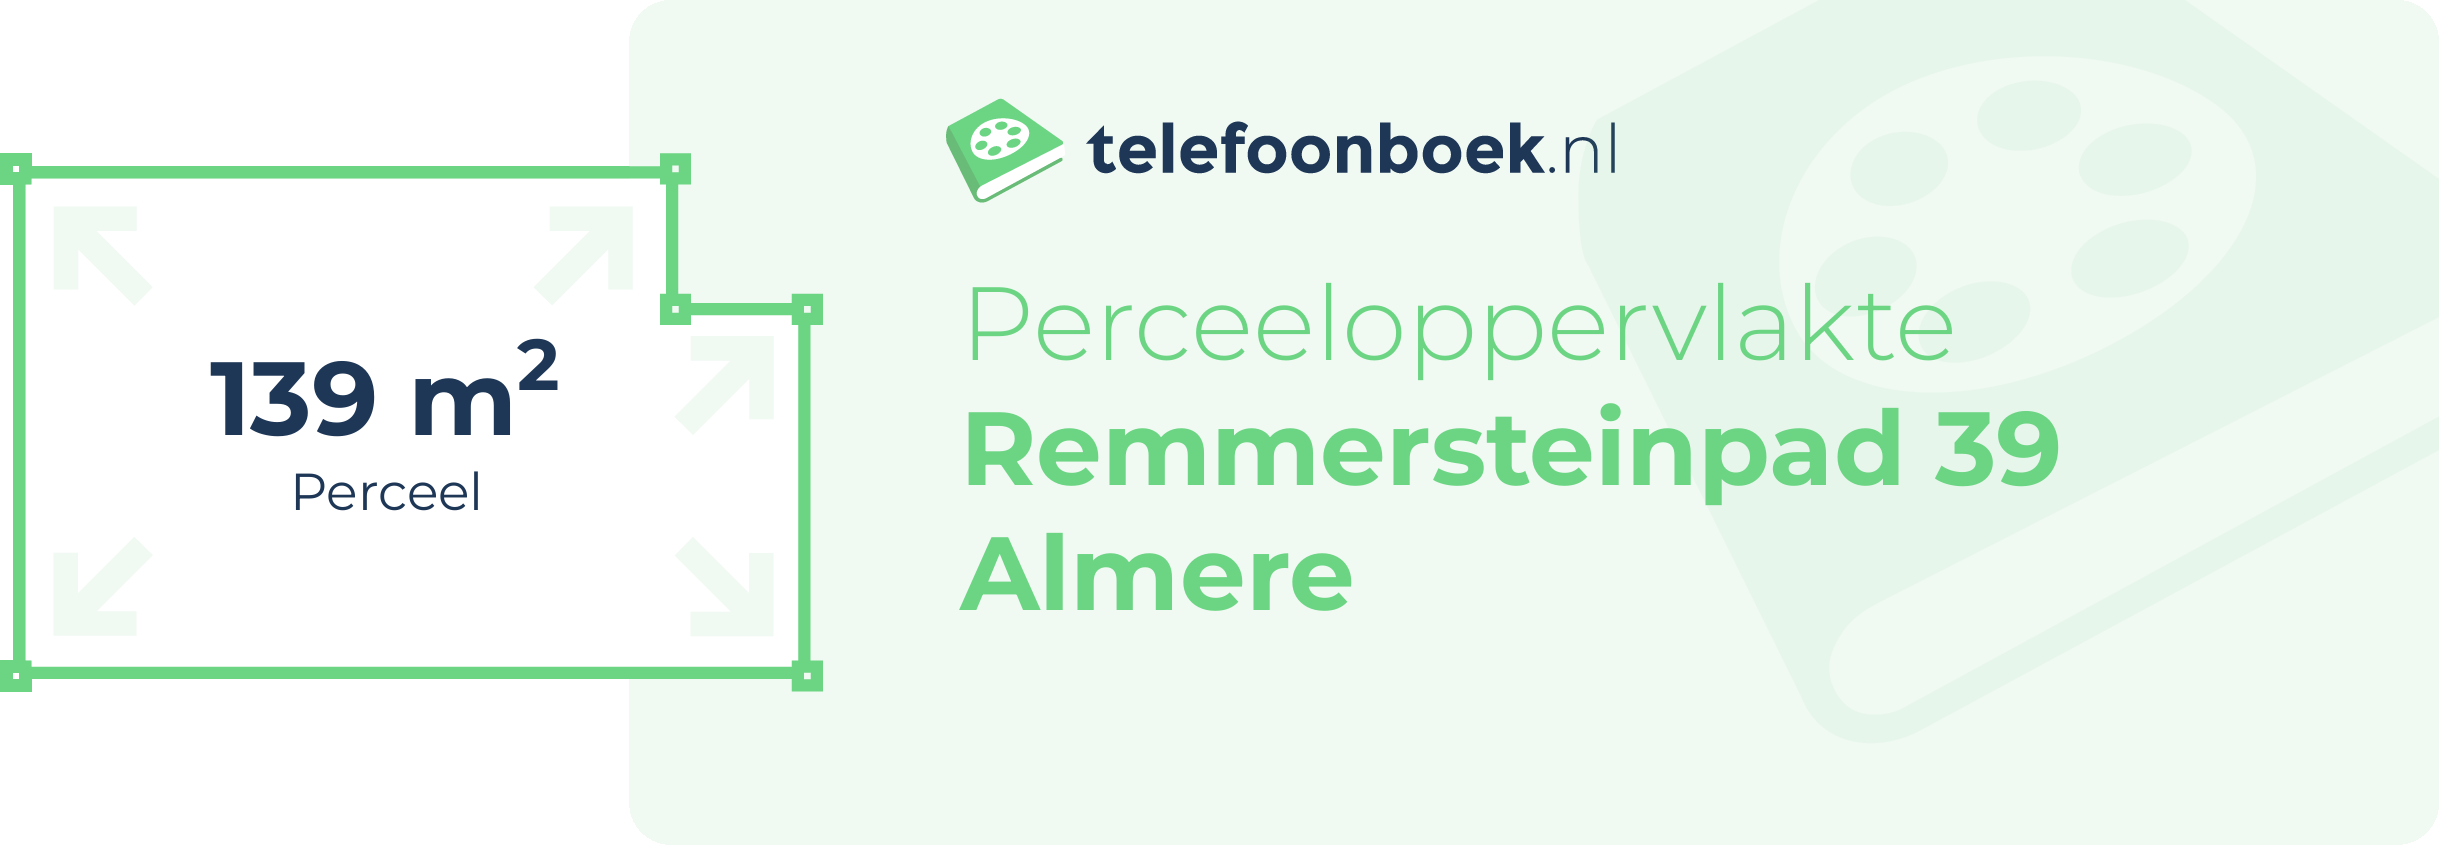 Perceeloppervlakte Remmersteinpad 39 Almere